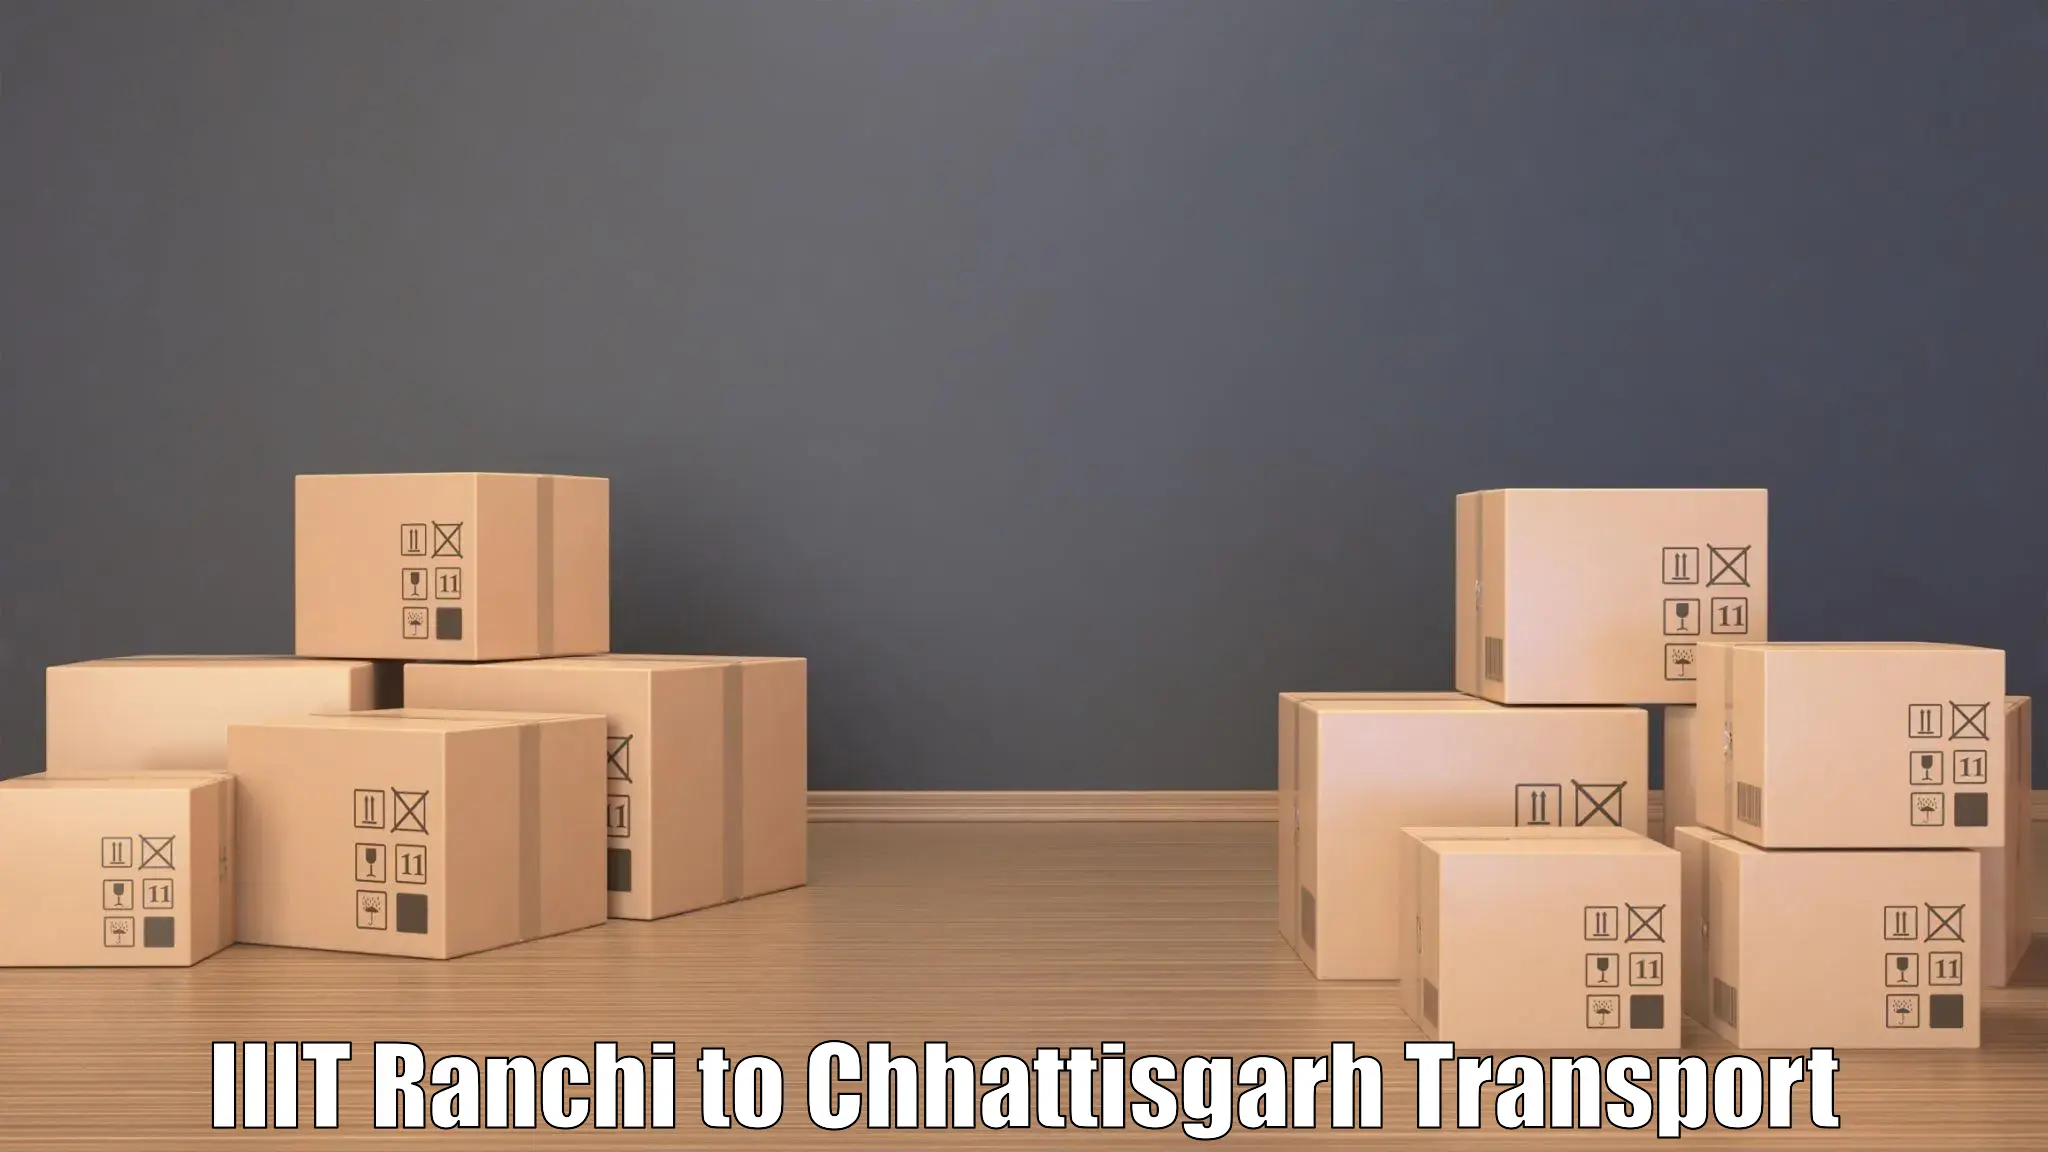 Nearby transport service IIIT Ranchi to Korea Chhattisgarh